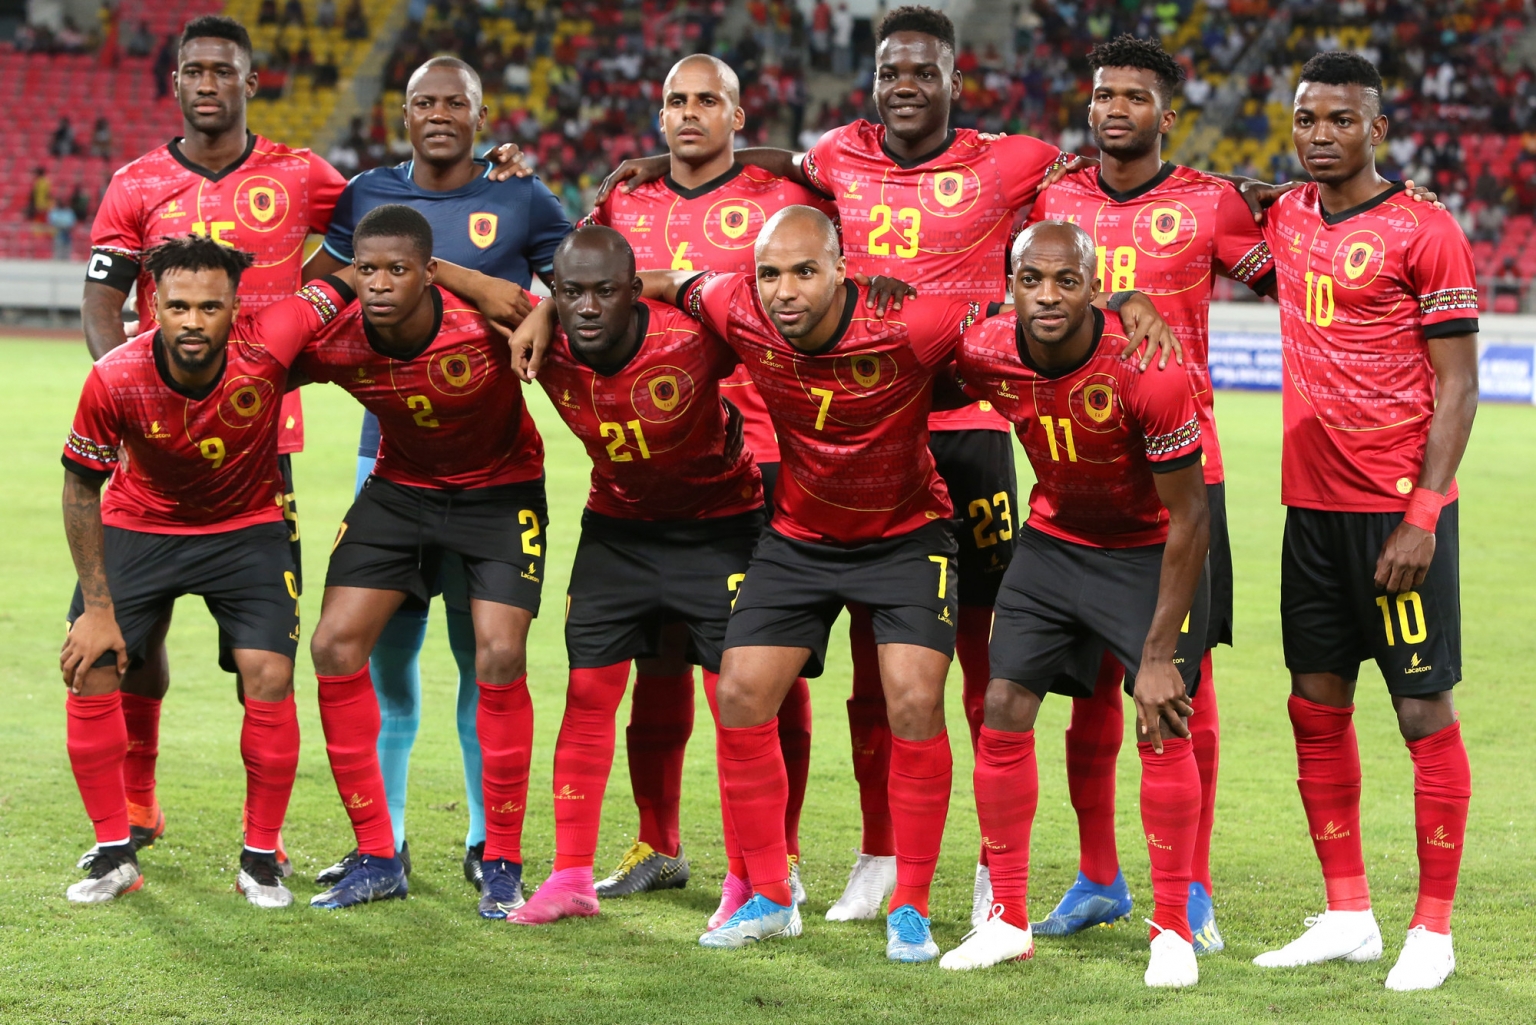 Seleção Nacional em amistoso contra Moçambique – Pró Desporto